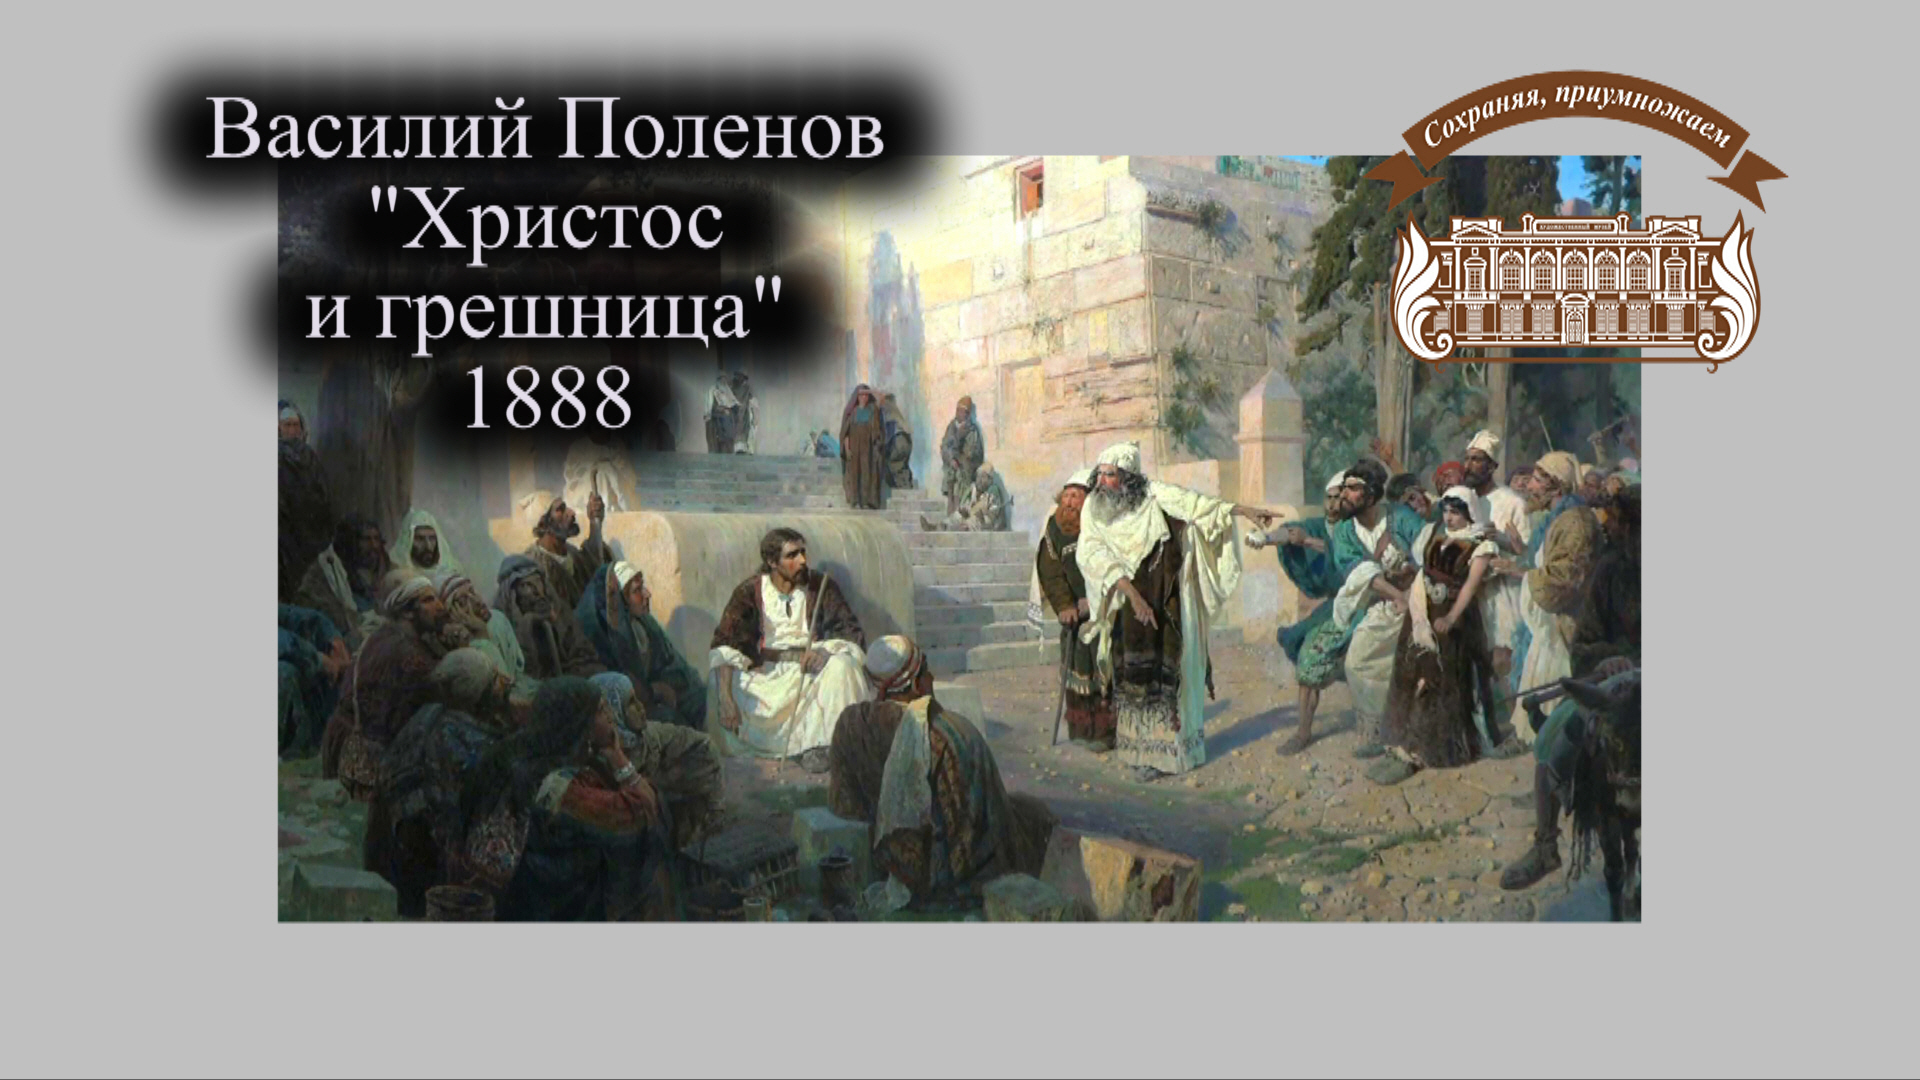 Картина В. Поленова "Христос и грешница" покидает Иркутск